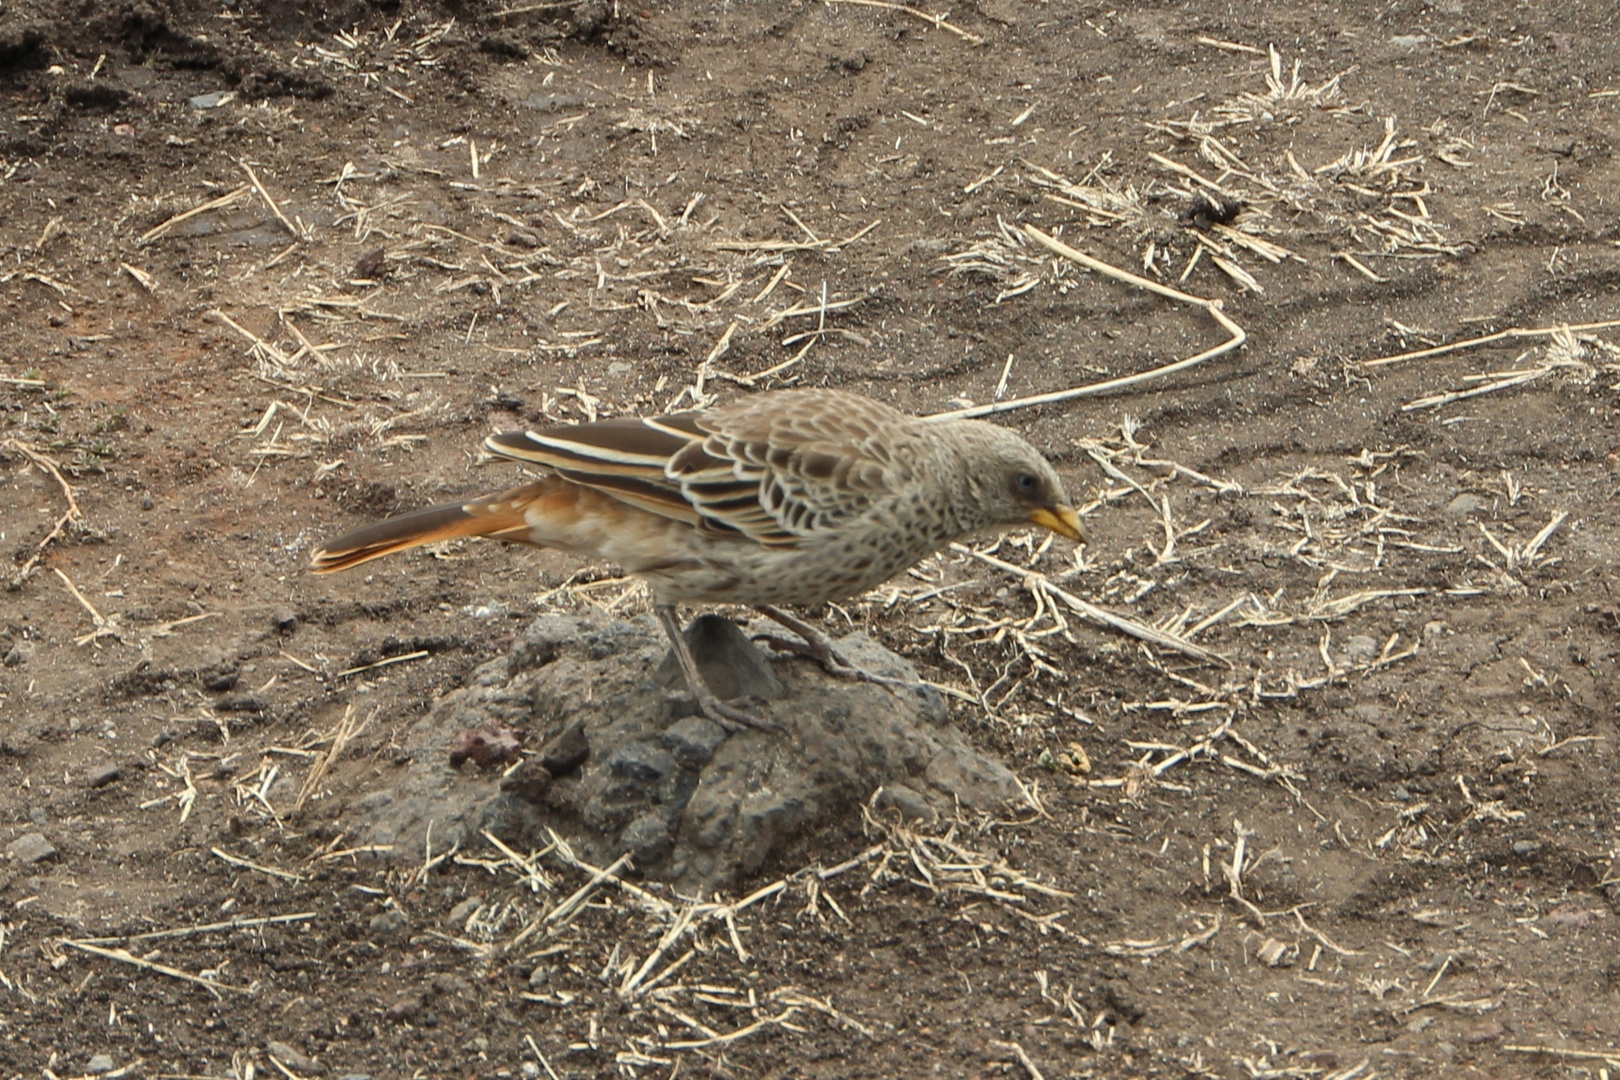 Rotschwanzweber  -  Rufous-tailed Weaver